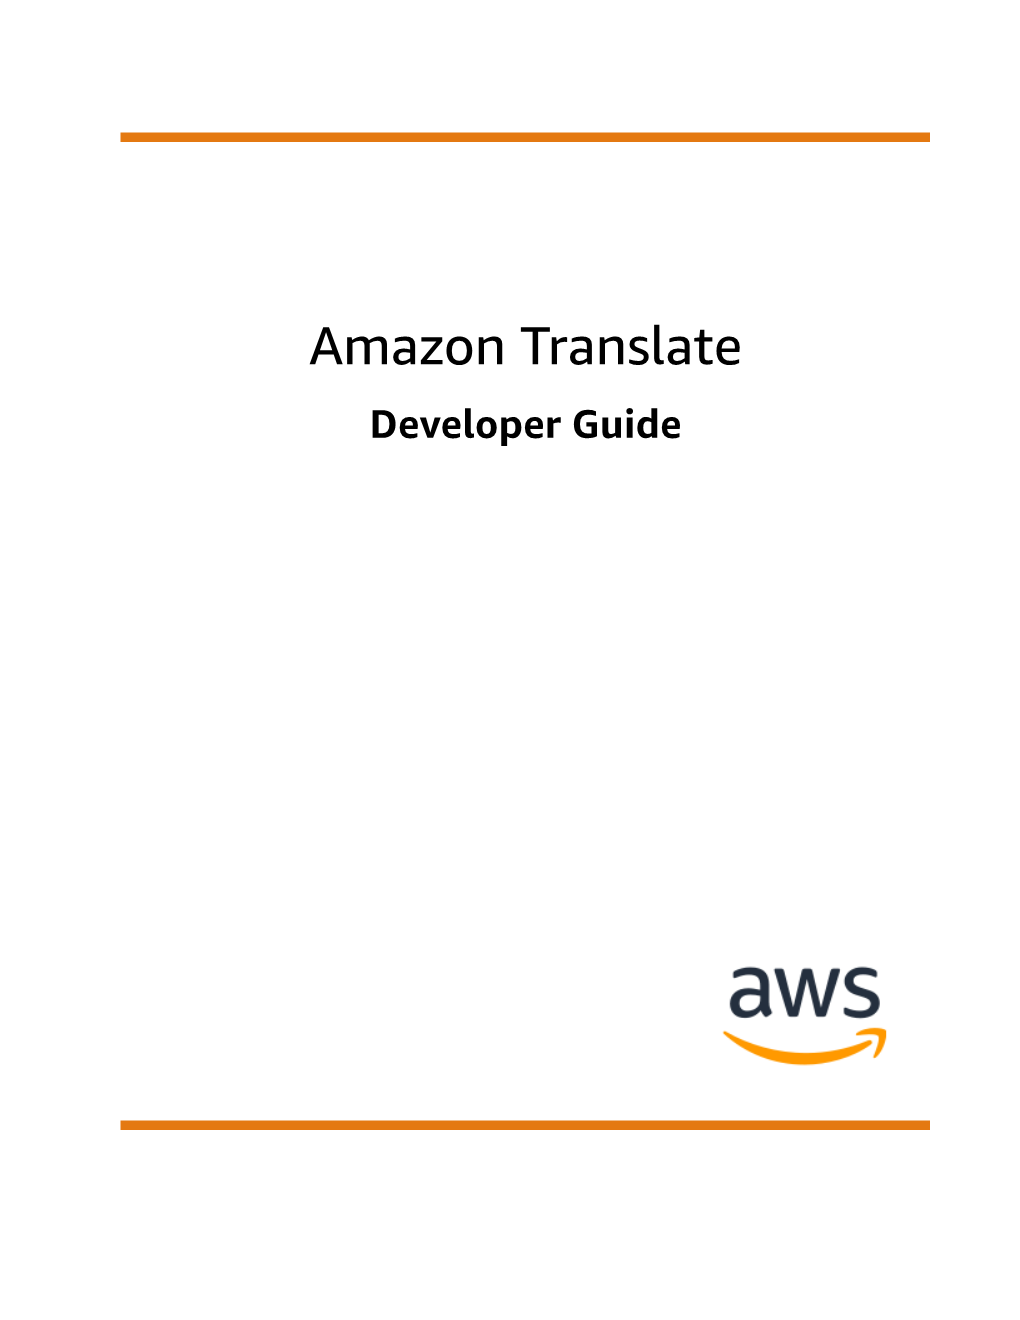 Amazon Translate Developer Guide Amazon Translate Developer Guide